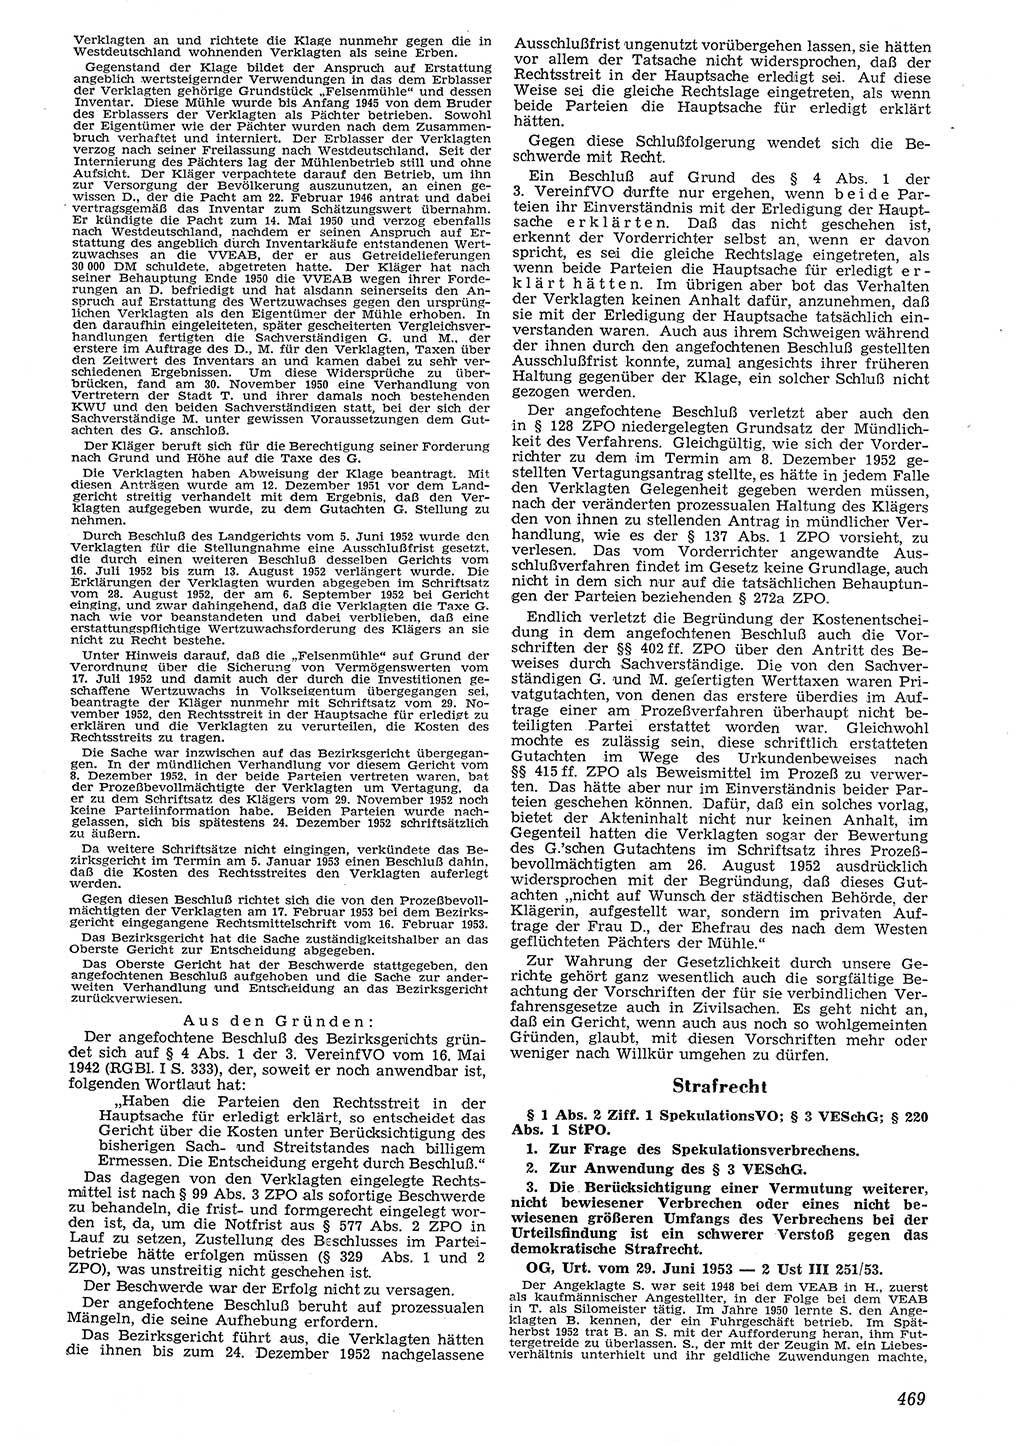 Neue Justiz (NJ), Zeitschrift für Recht und Rechtswissenschaft [Deutsche Demokratische Republik (DDR)], 7. Jahrgang 1953, Seite 469 (NJ DDR 1953, S. 469)